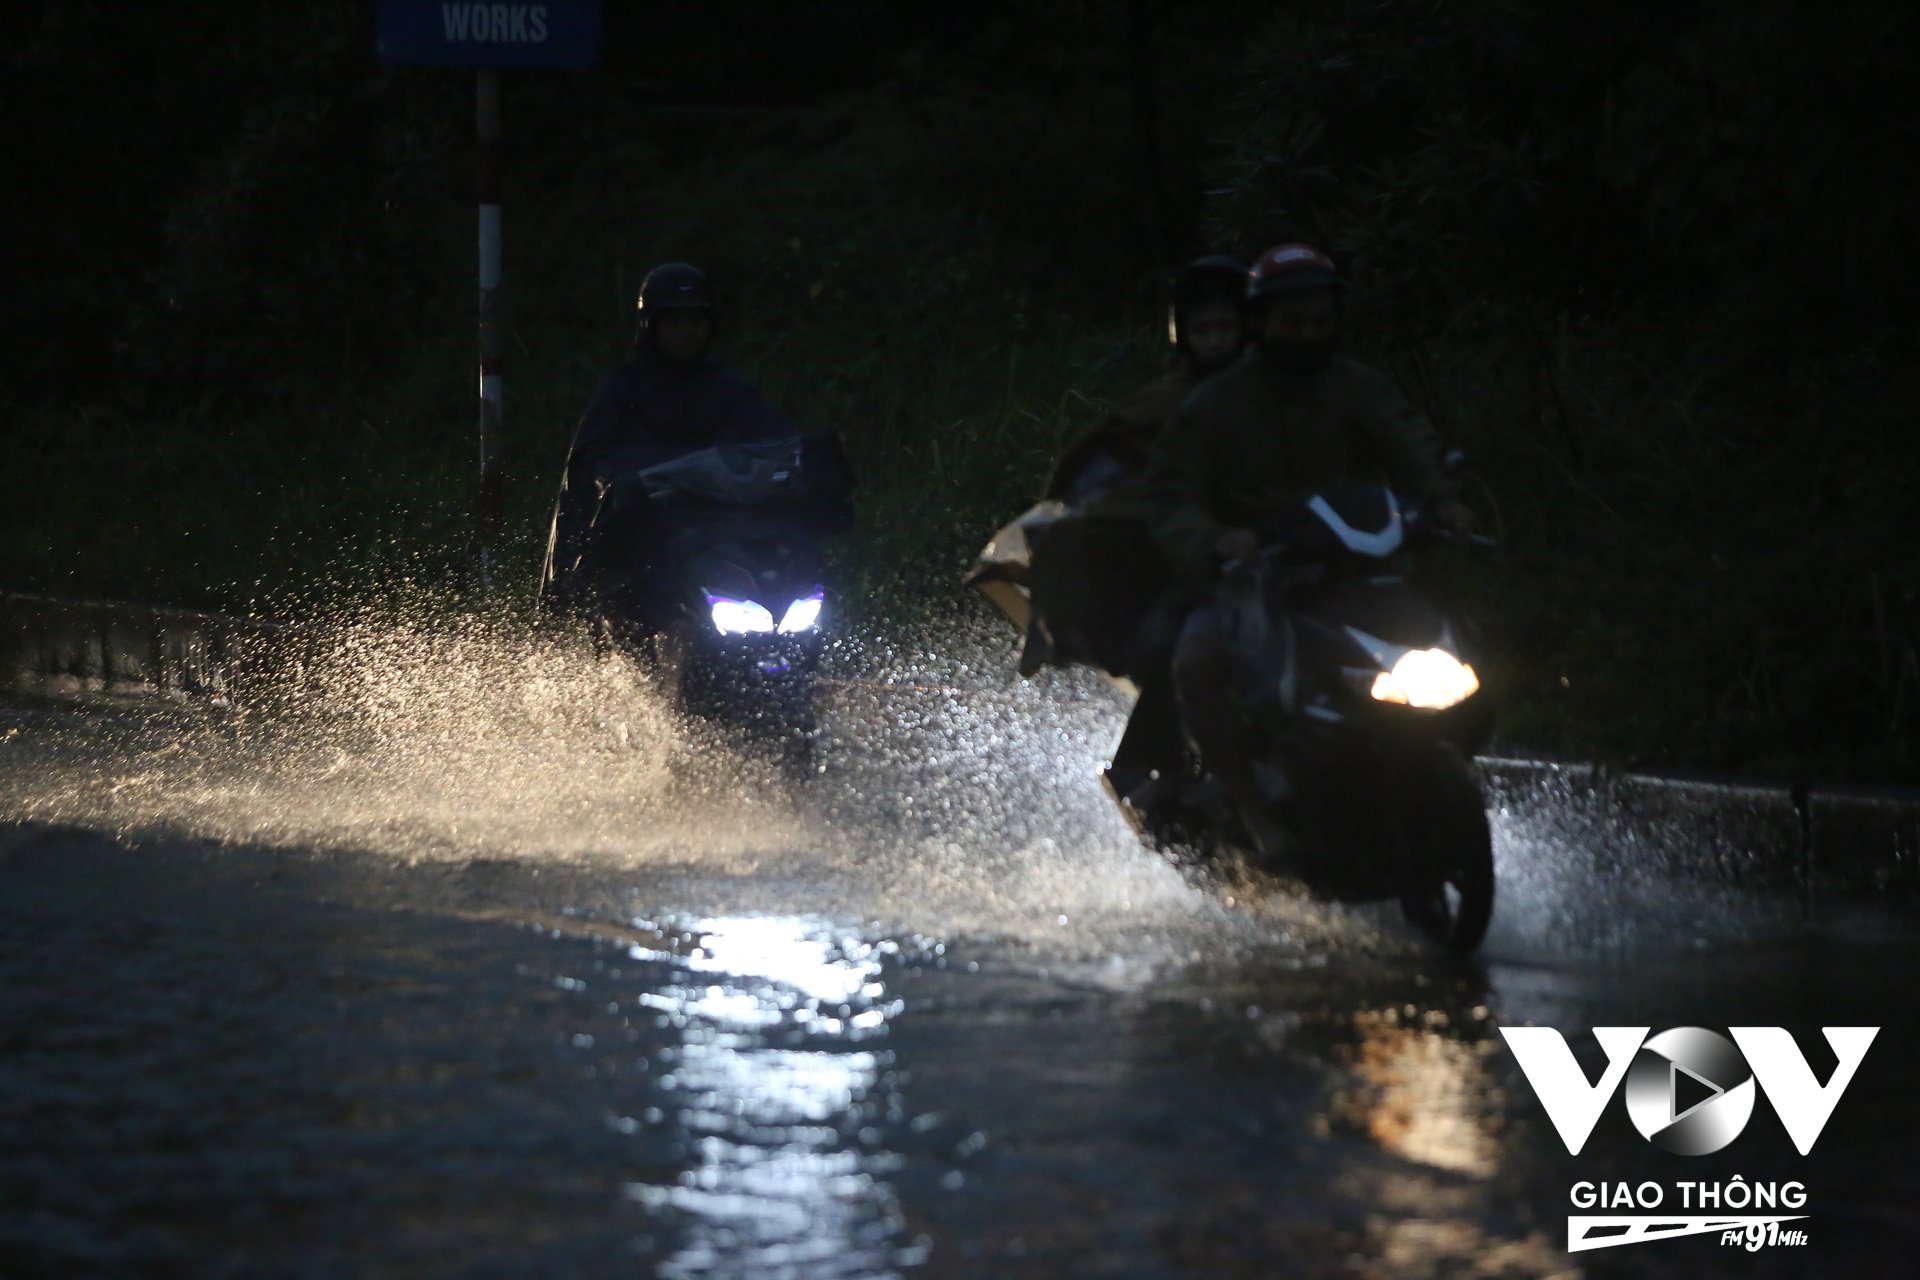 Công ty TNHH MTV Thoát nước Hà Nội đã sẵn sàng phương án xử lý đối với các tình huống thiên tai, mưa bão, các trận mưa lớn bất thường gây ngập úng. Ảnh minh họa.